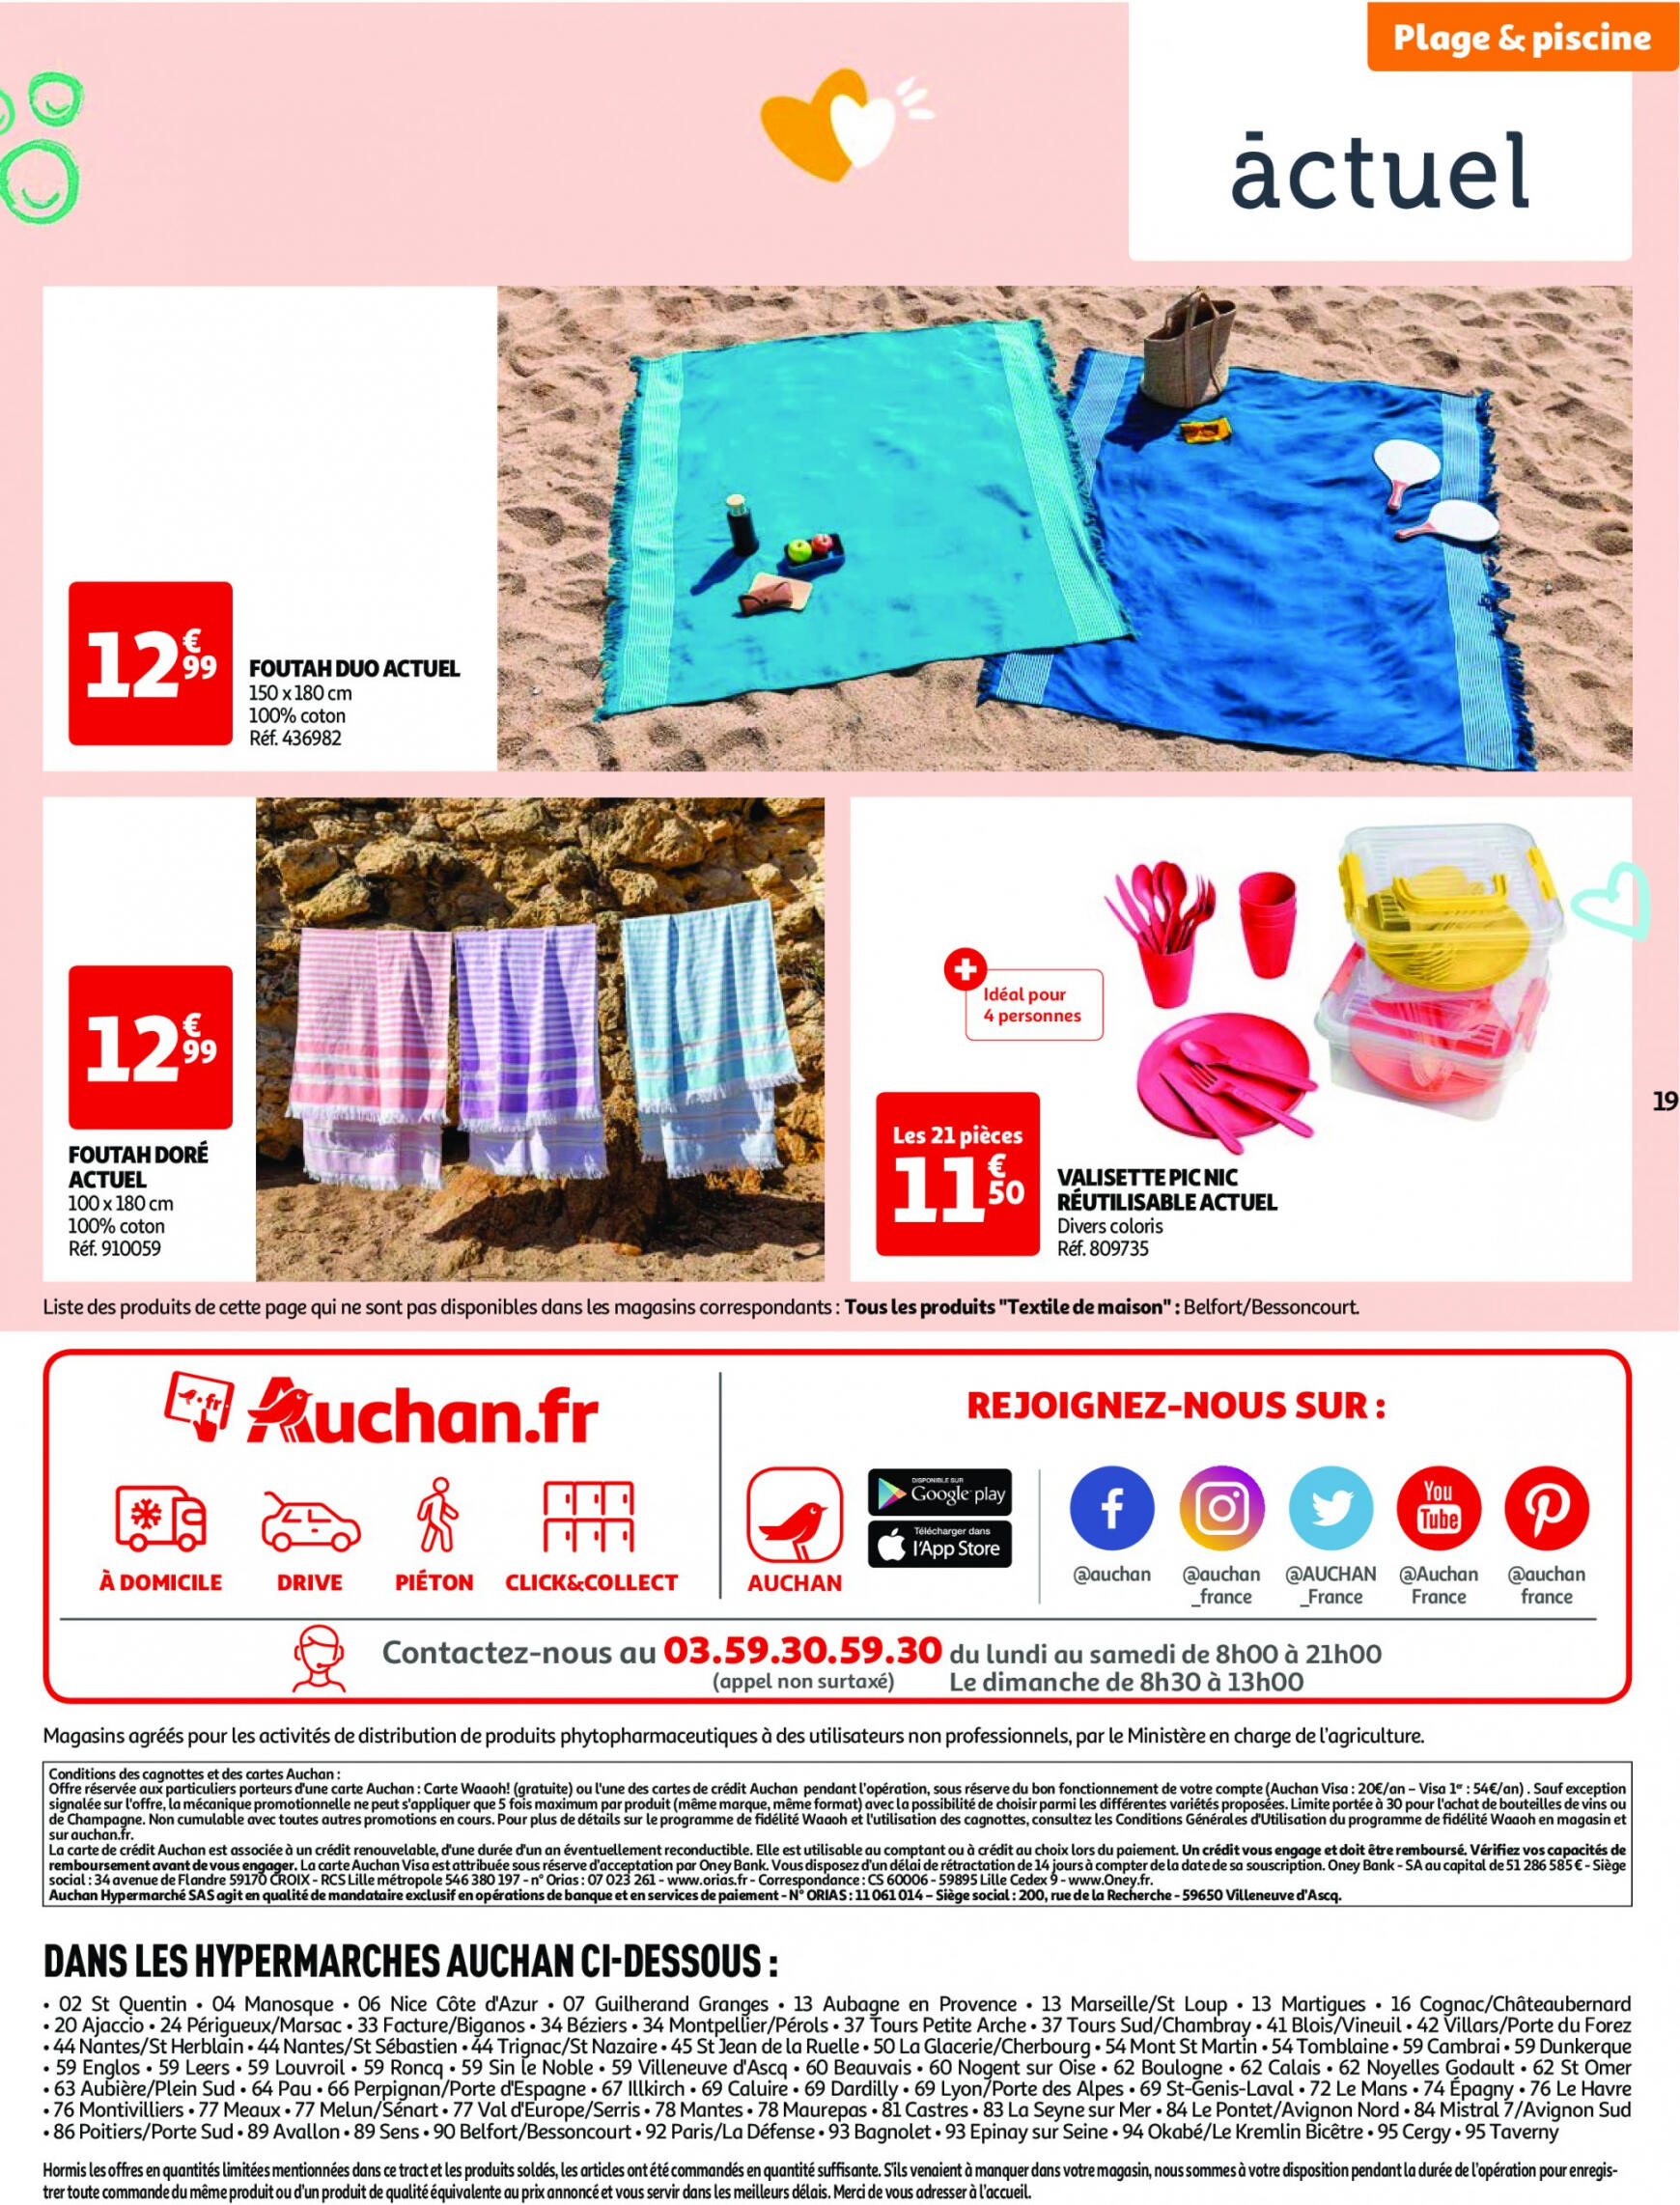 auchan - Auchan - Nos exclusivités Summer pour s'amuser tout l'été folder huidig 14.05. - 15.06. - page: 19